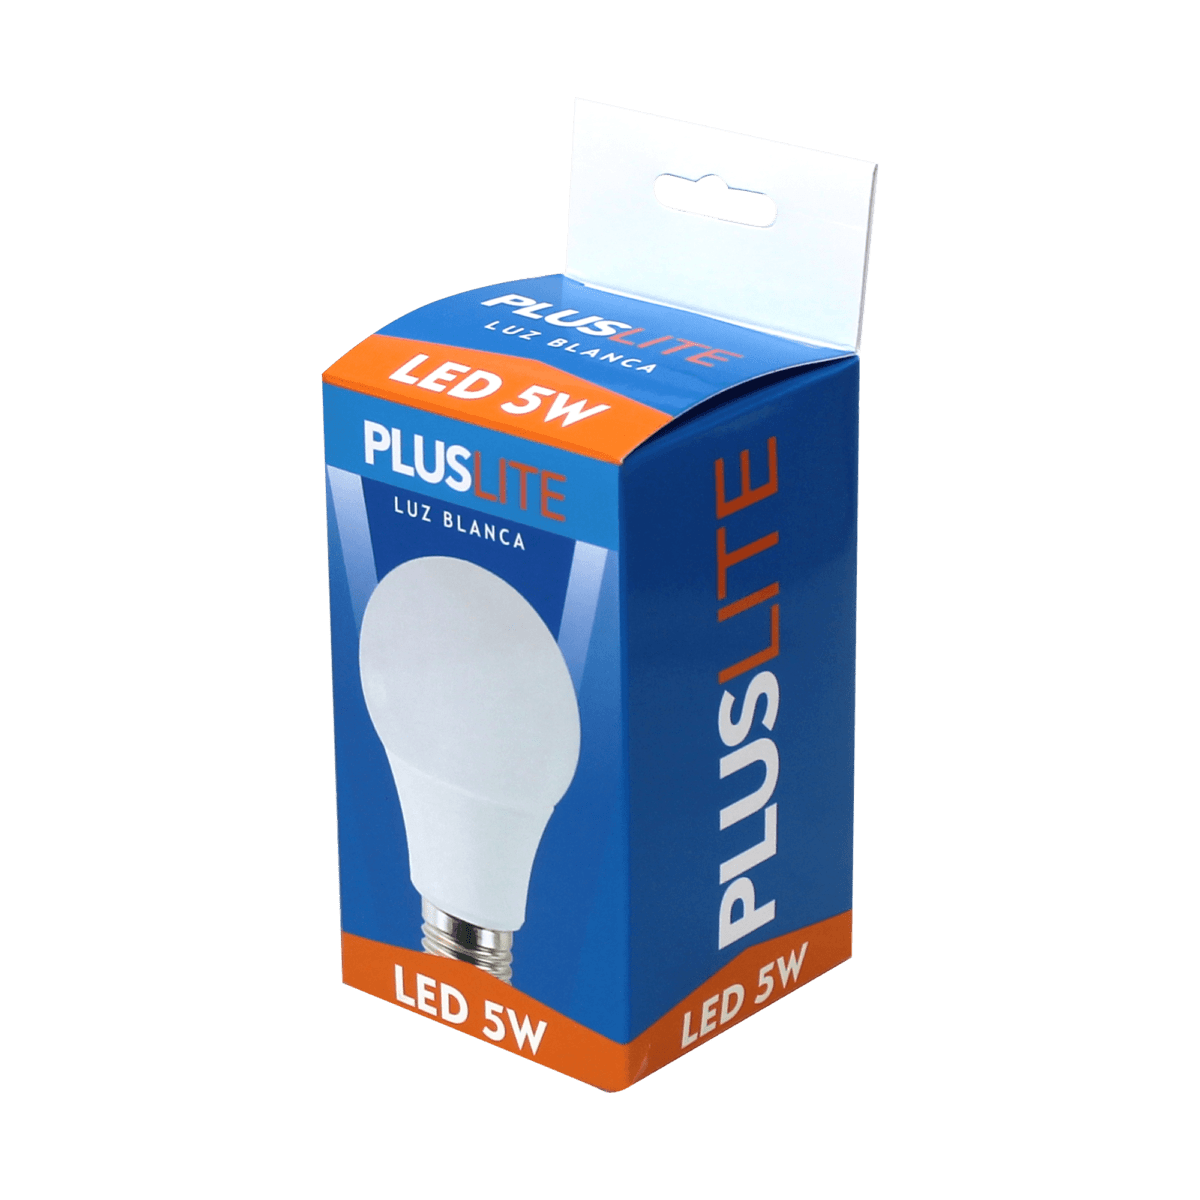 Bulbo LED 5W Pluslite Luz Blanca E27 1225 3